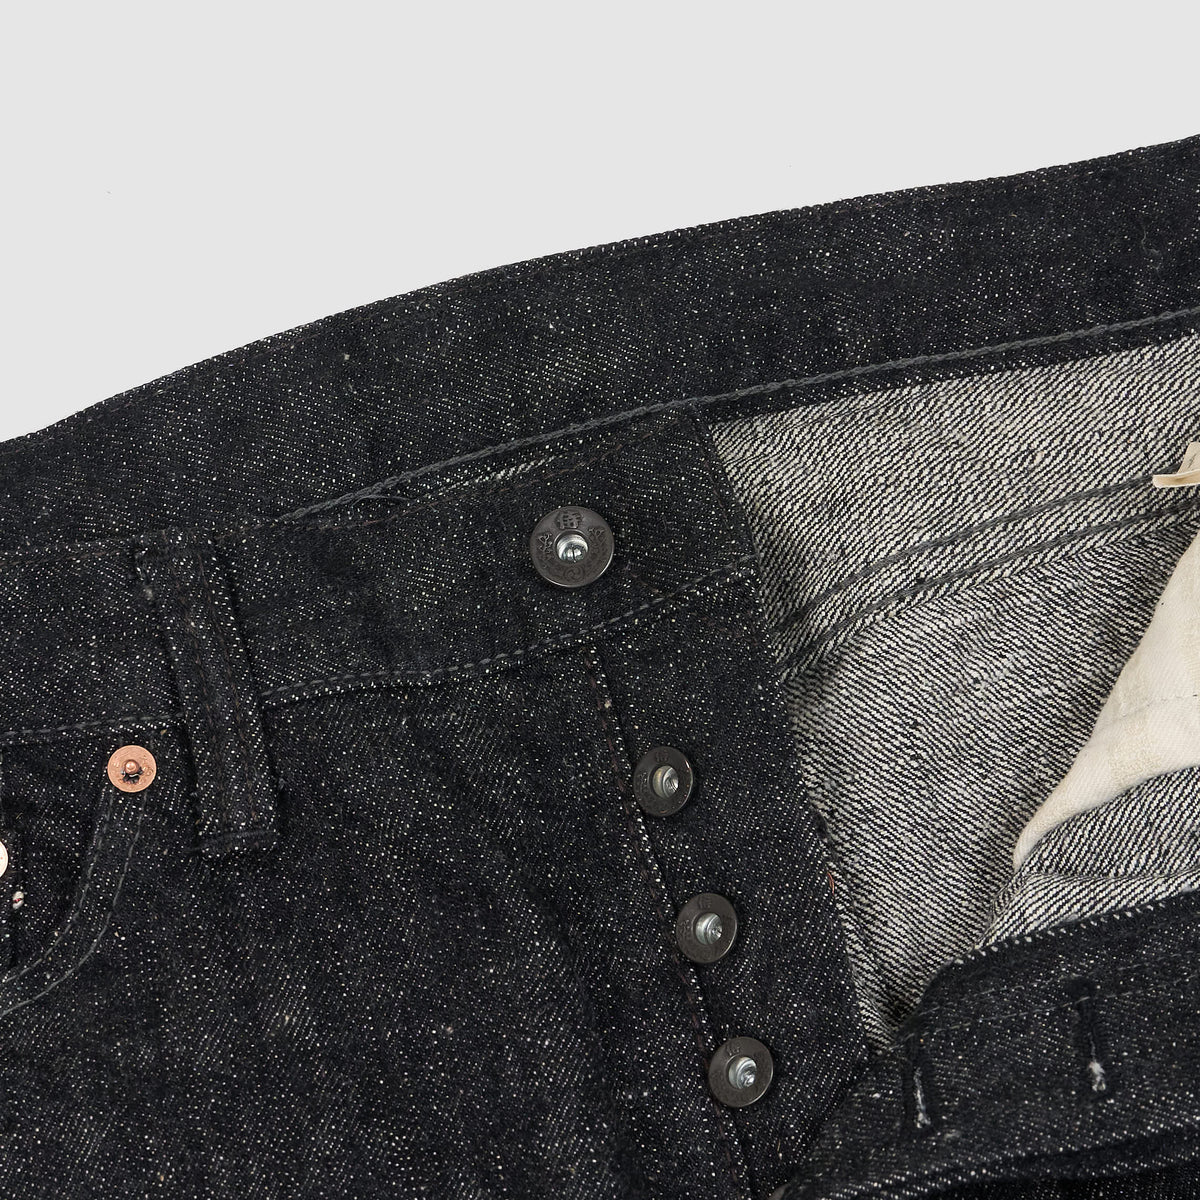 Samurai 5-Pocket Black Denim Selvage Jeans &quot;Model Zero&quot; 17oz